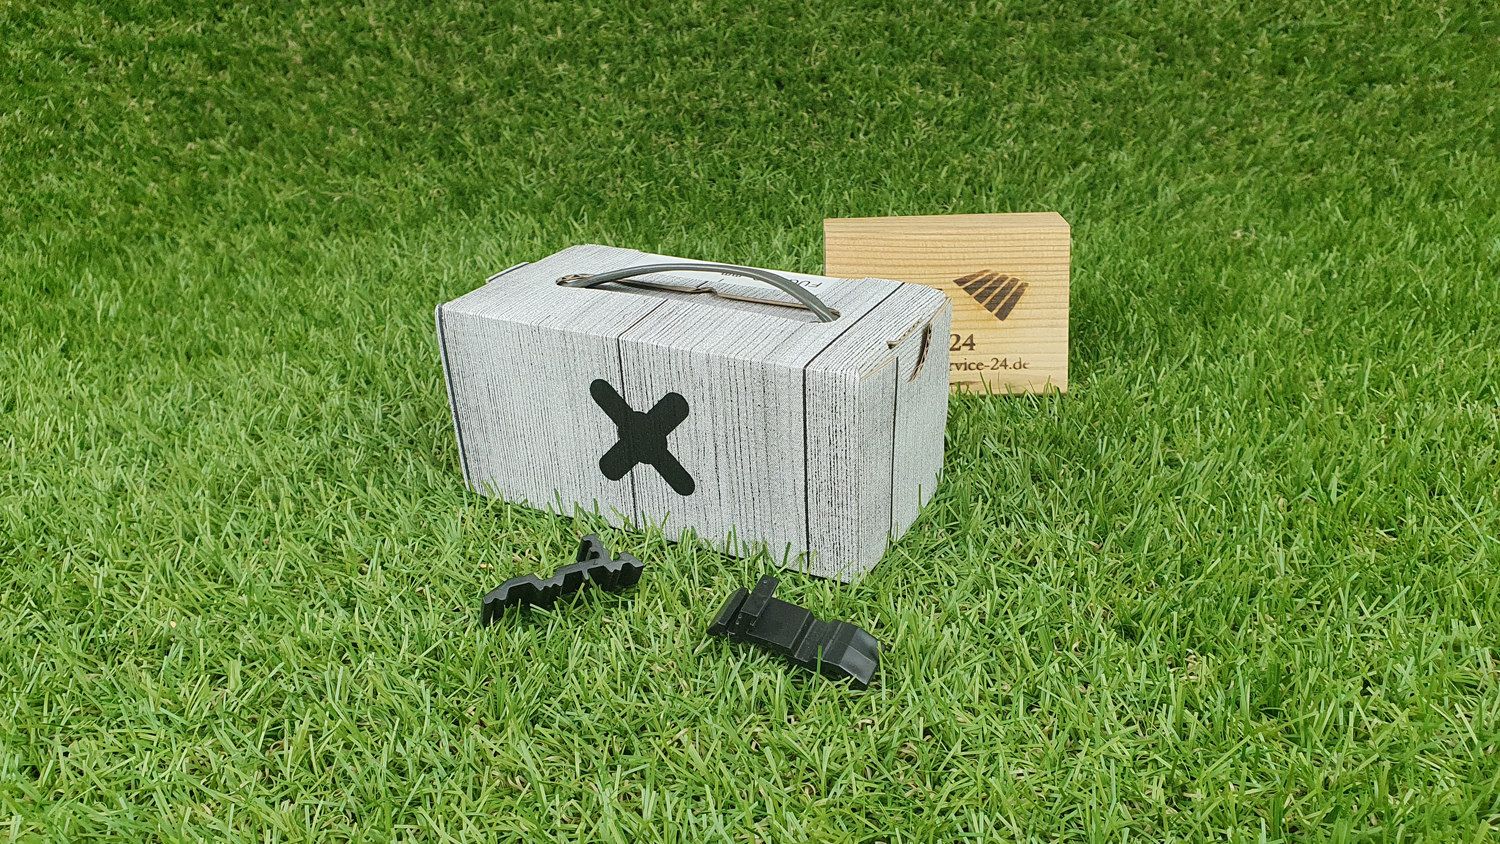 Kleinpackung Fugo Distanzhalter 5mm für Rhombusleisten, 40 Stck